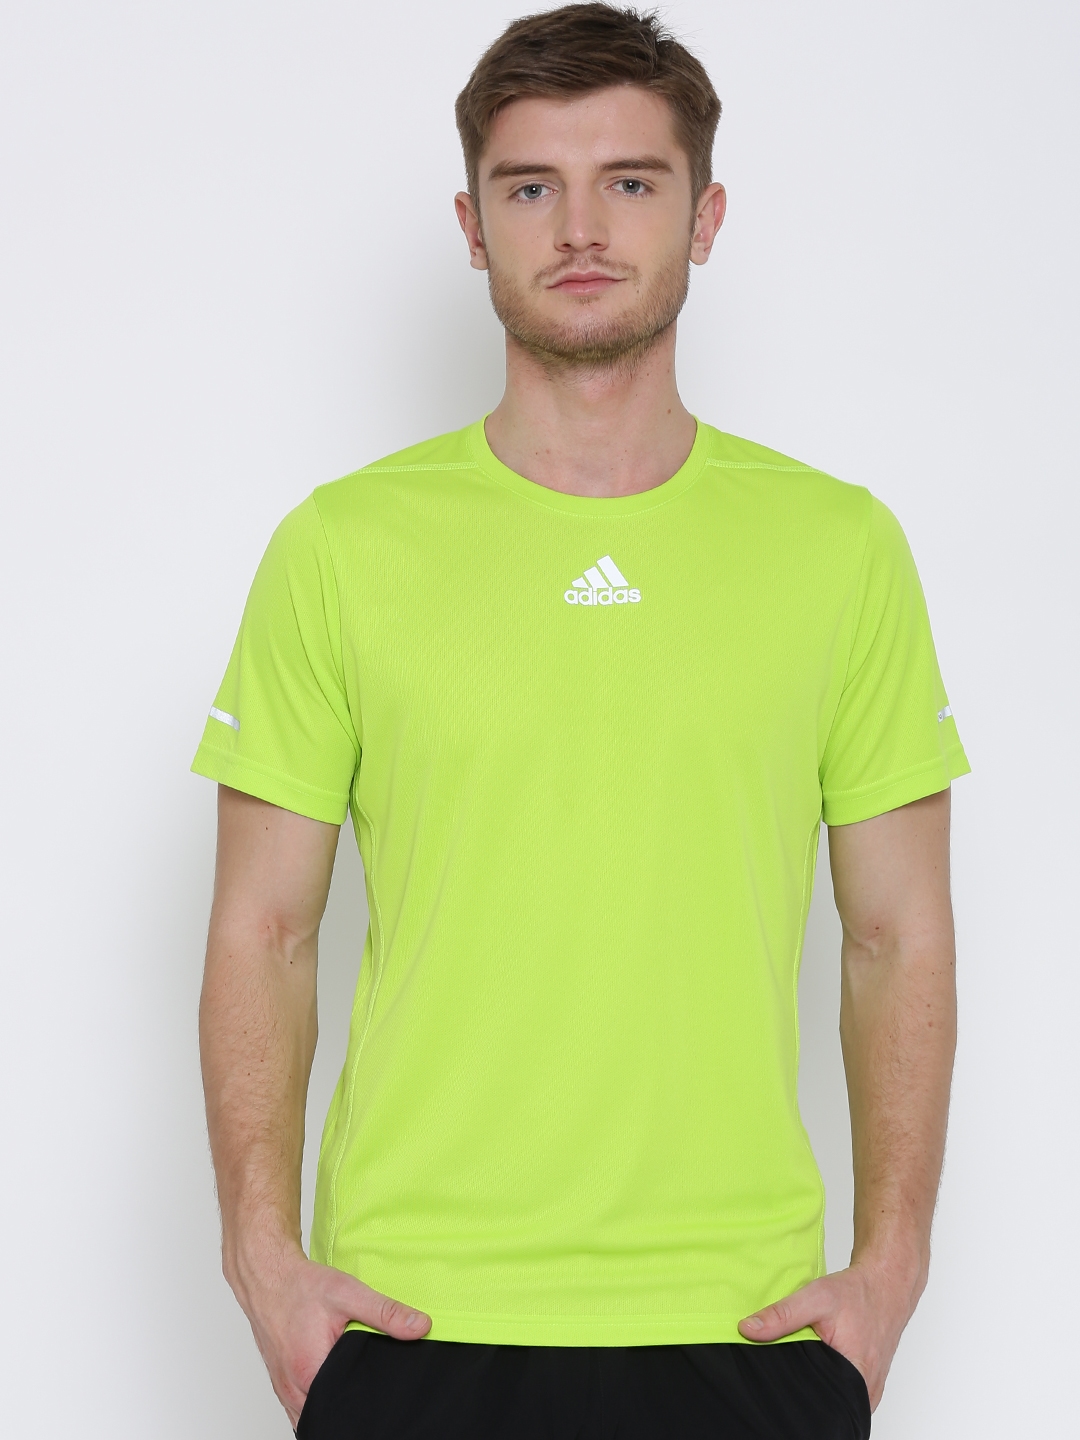 Adidas Men's Top - Green - L